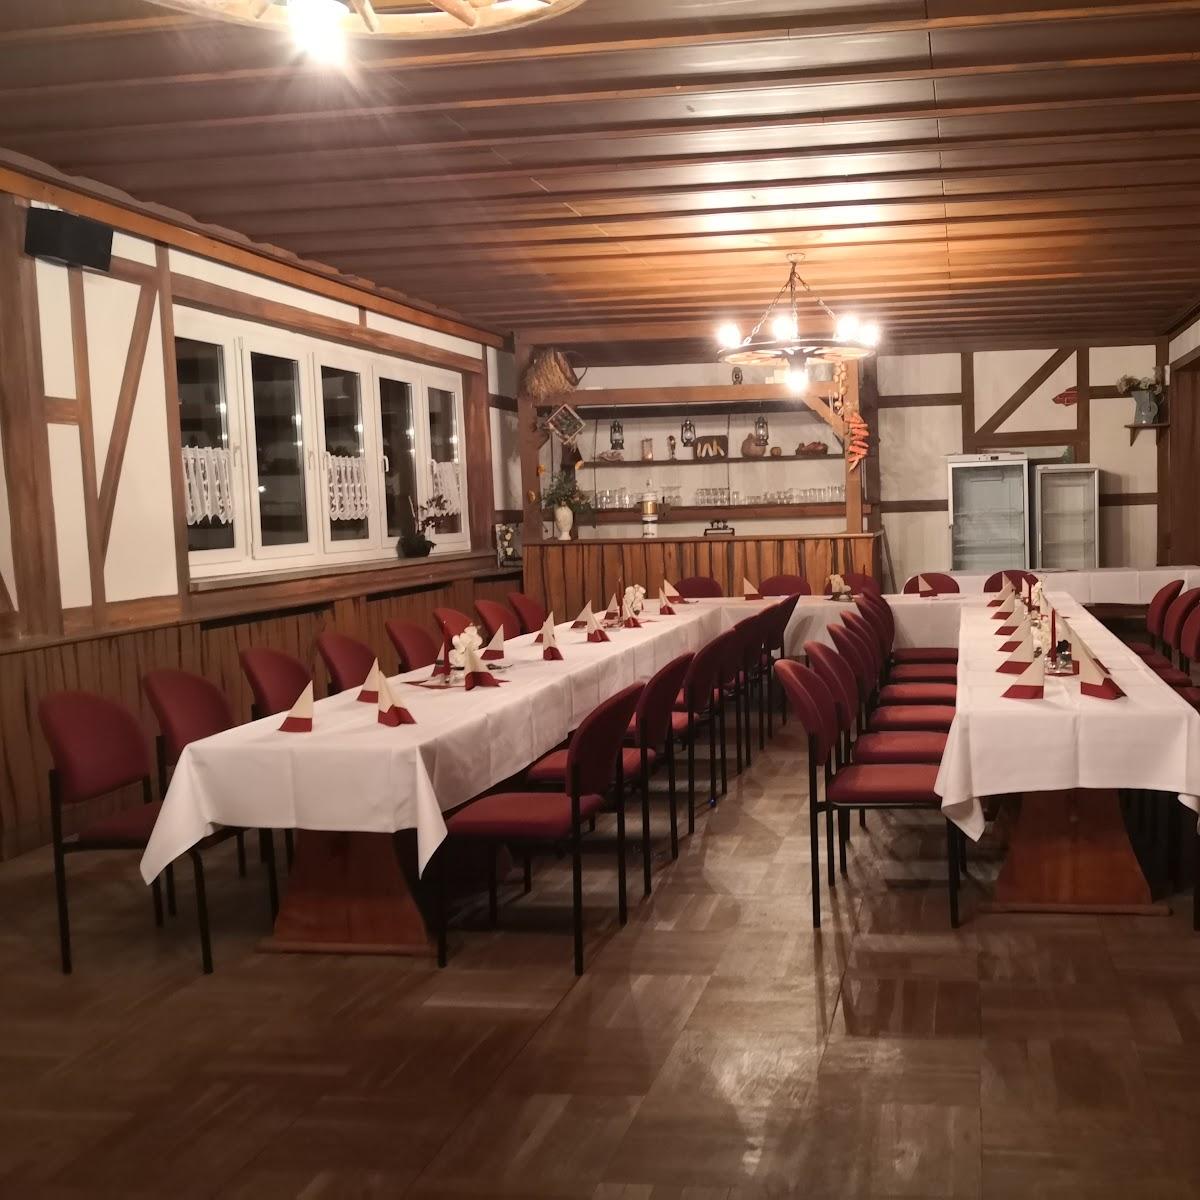 Restaurant "Landgaststätte Schlaitz" in Muldestausee